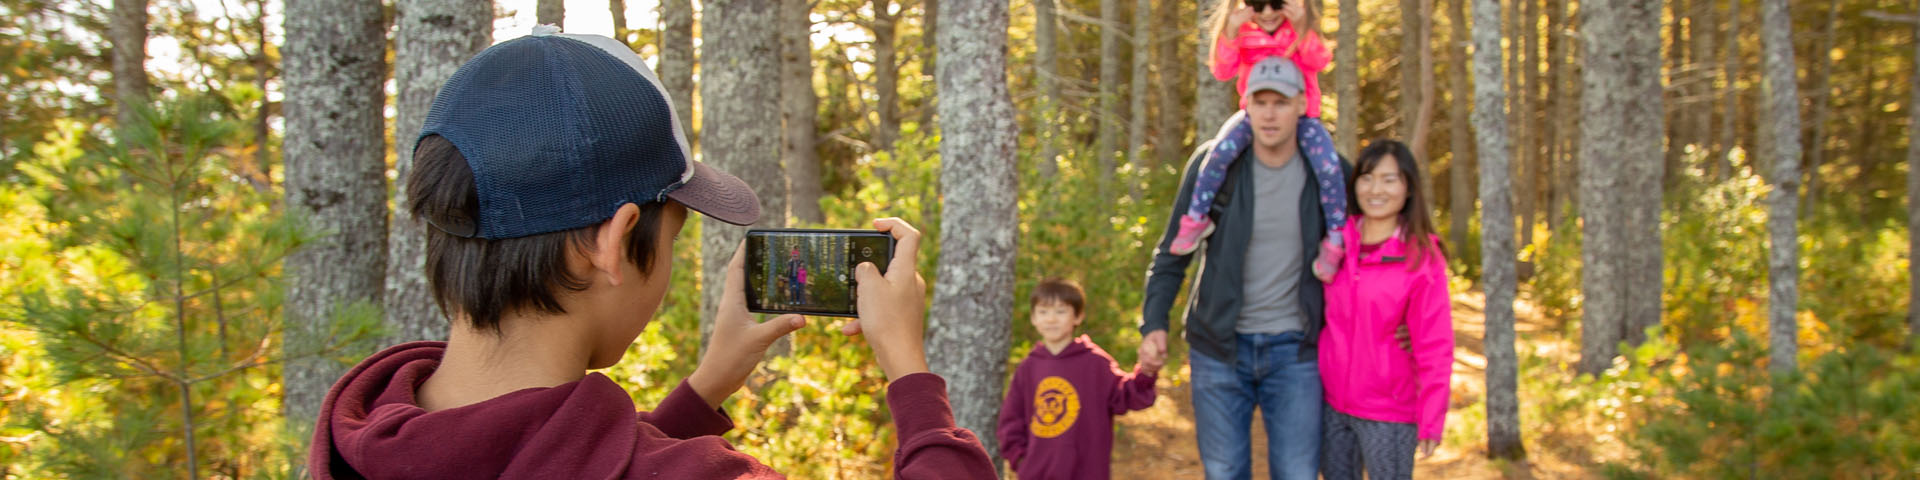 Un garçon prend une photo de sa famille sur un sentier de l'île.